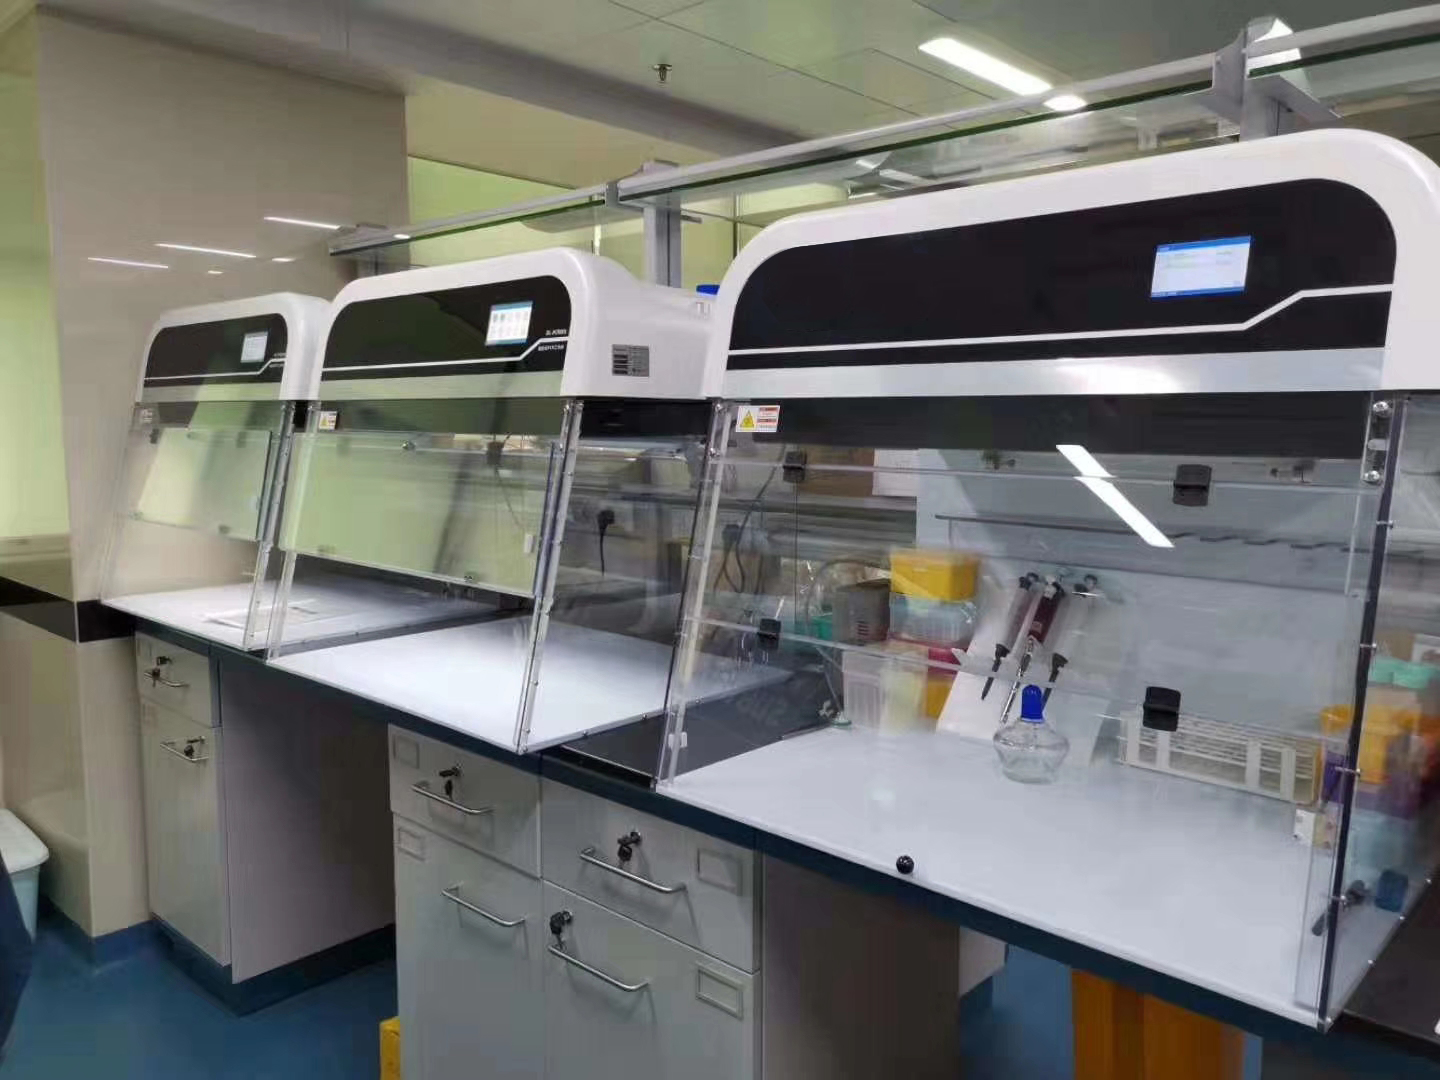 Gabinetes de PCR Tipo de operador de un solo operador de flujo laminar